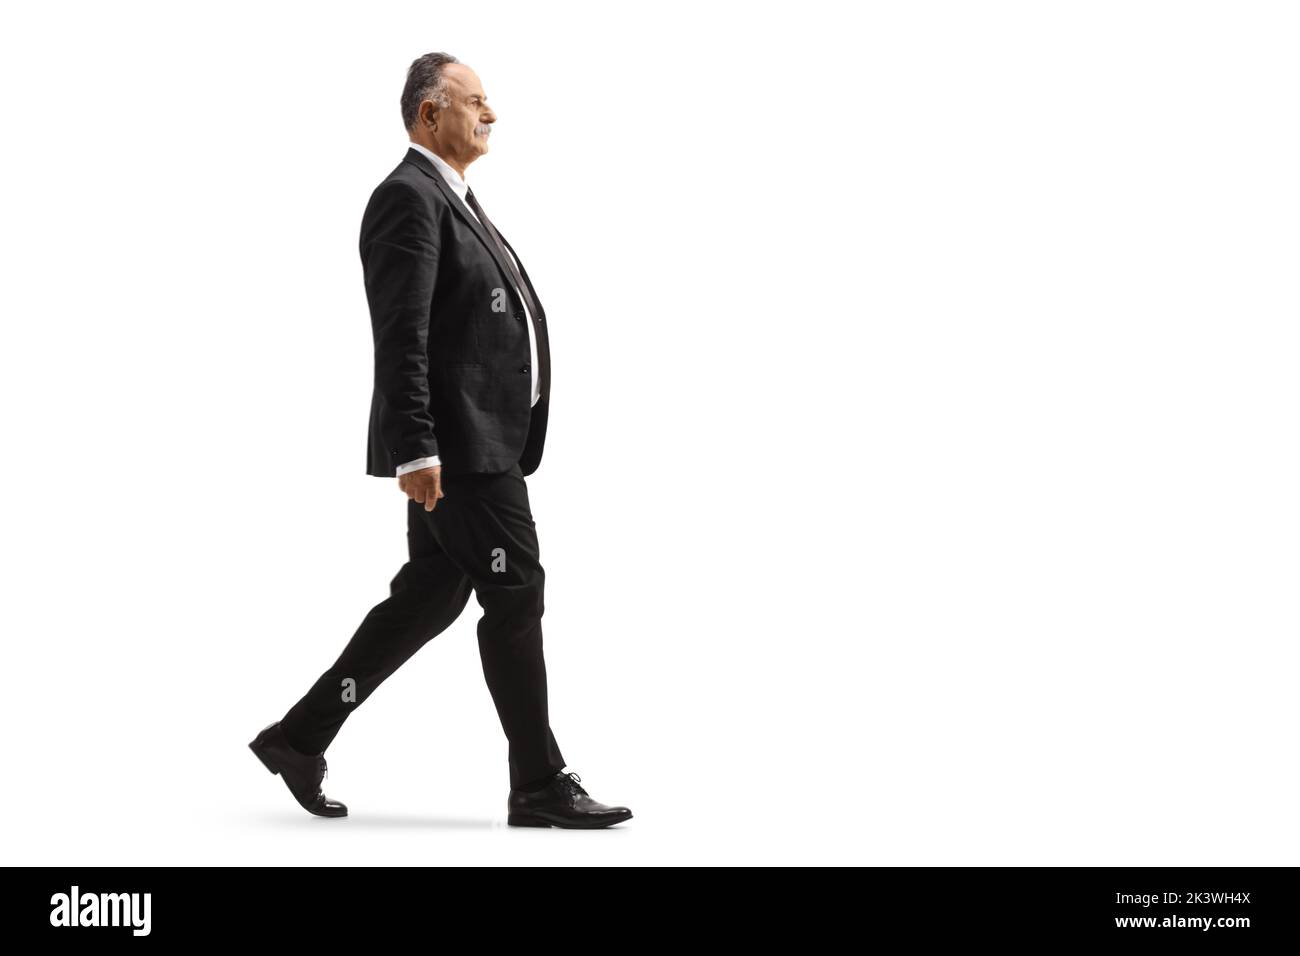 Foto de perfil completo de un hombre de negocios maduro con un traje negro que caminaba aislado sobre fondo blanco Foto de stock